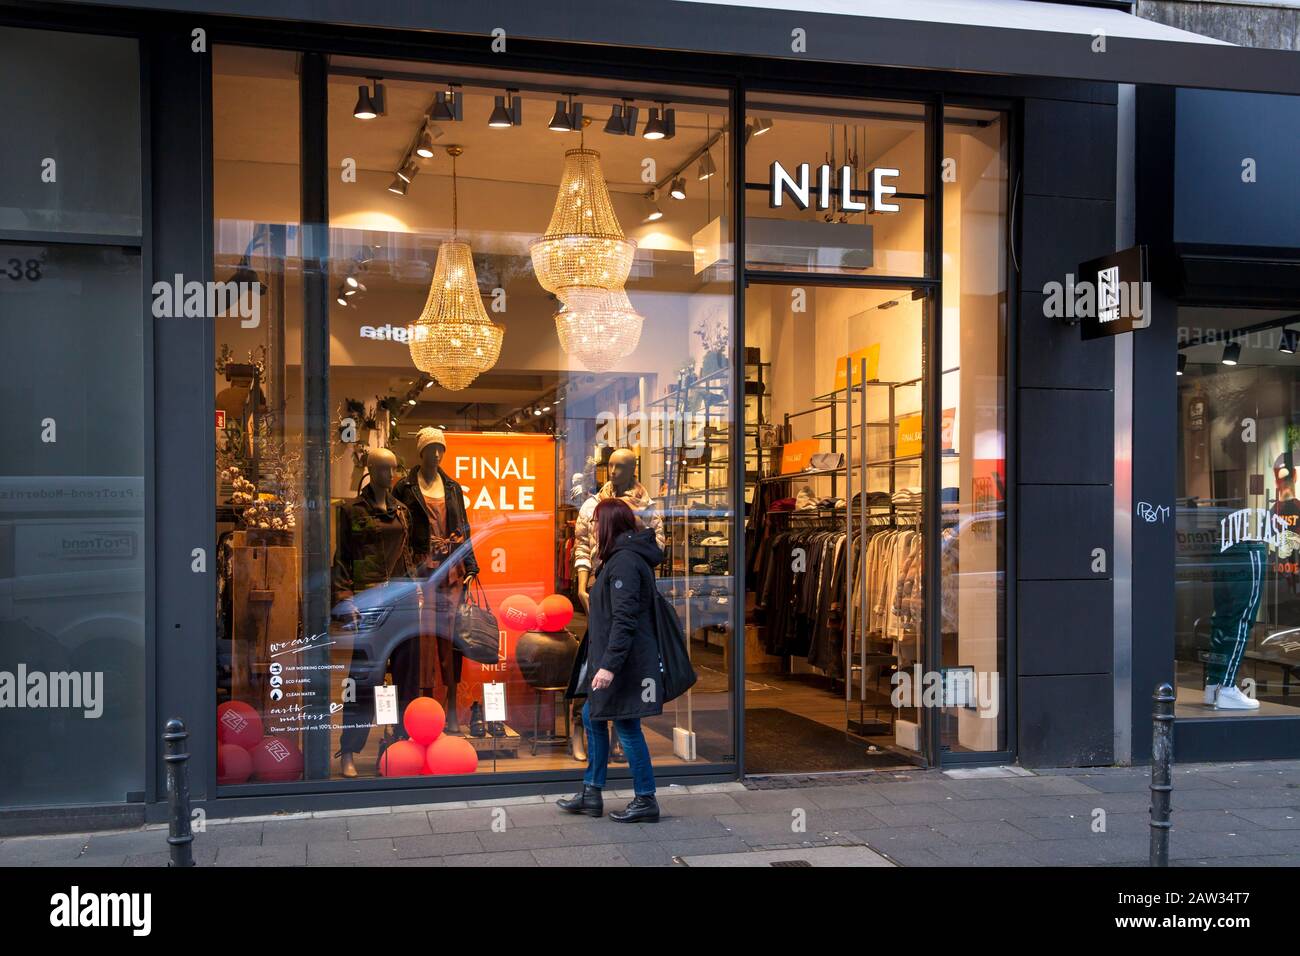 Tienda de moda Nilo en la calle comercial Ehrenstrasse, Colonia, Alemania. Modegeschaeft Nile en der Ehrenstrasse, Koeln, Deutschland. Foto de stock